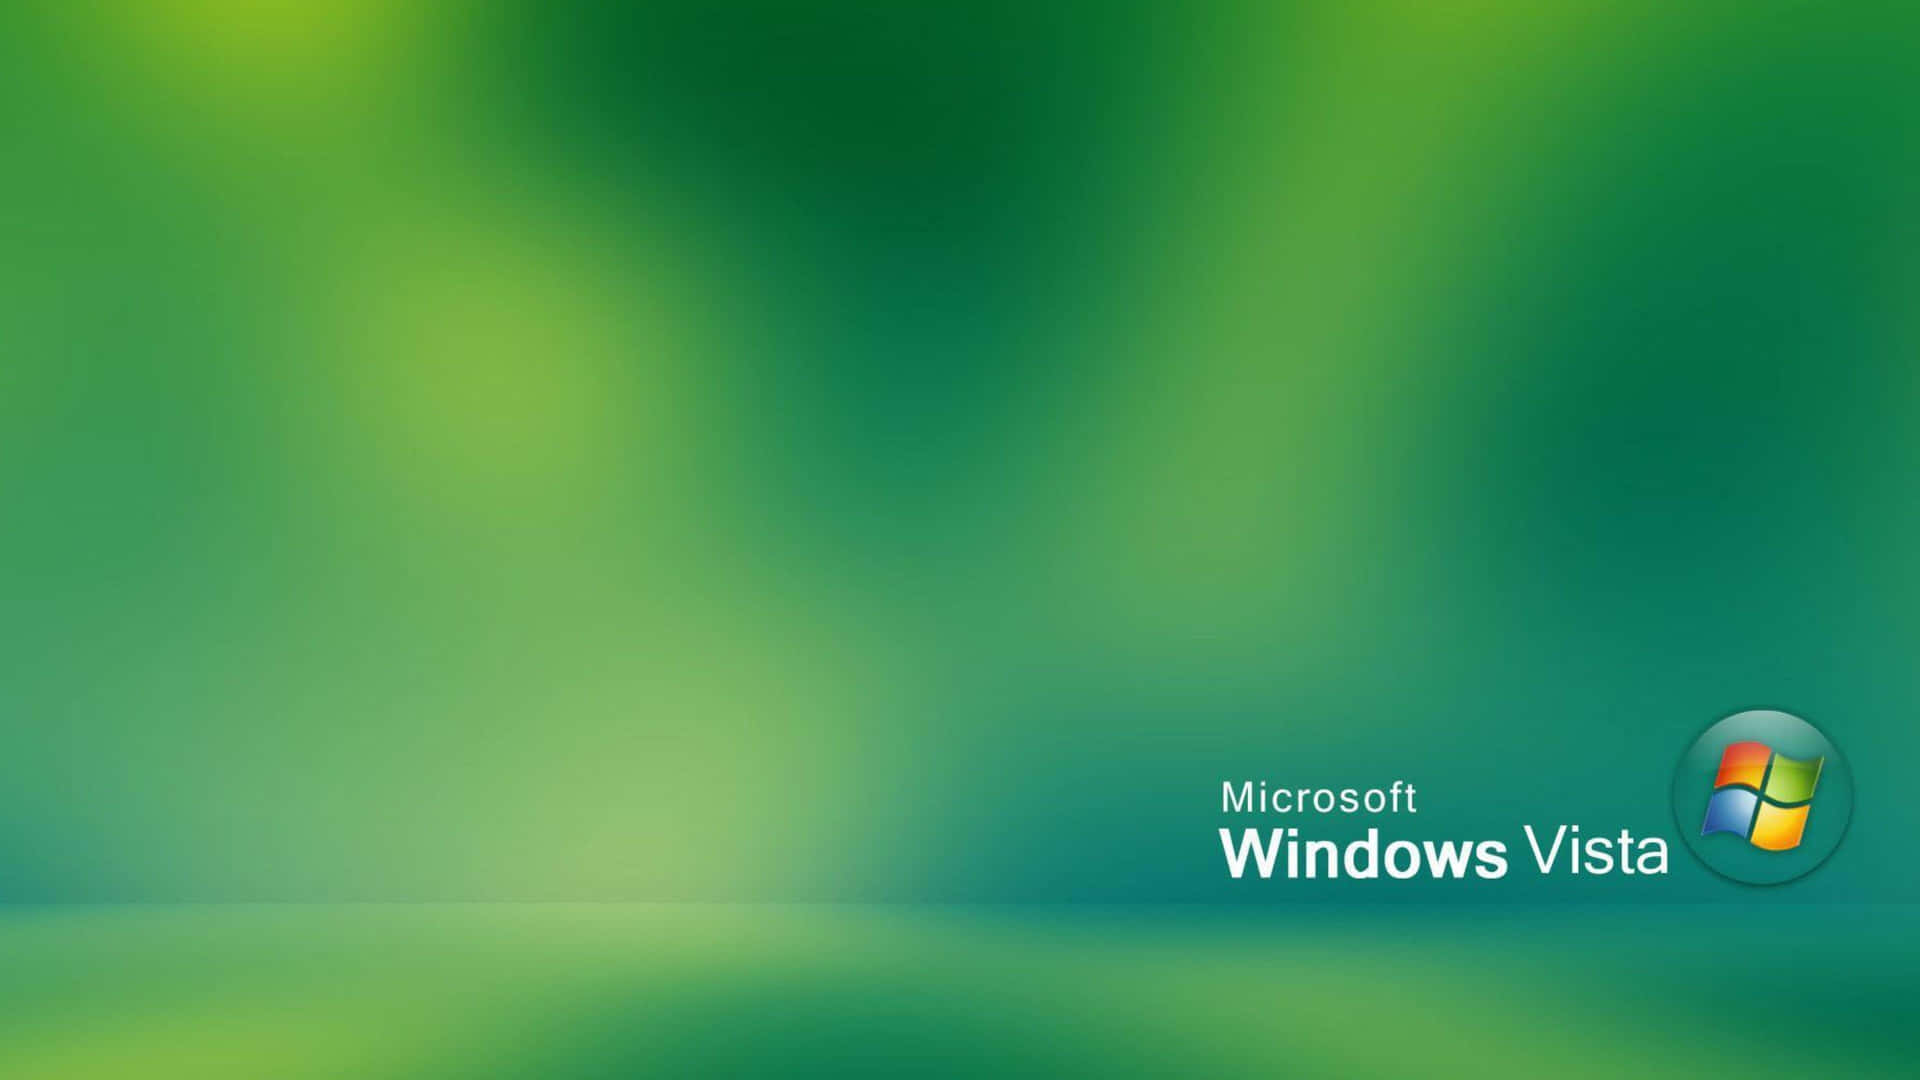 Fåen Forbedret Visuel Oplevelse Med Windows Vista.